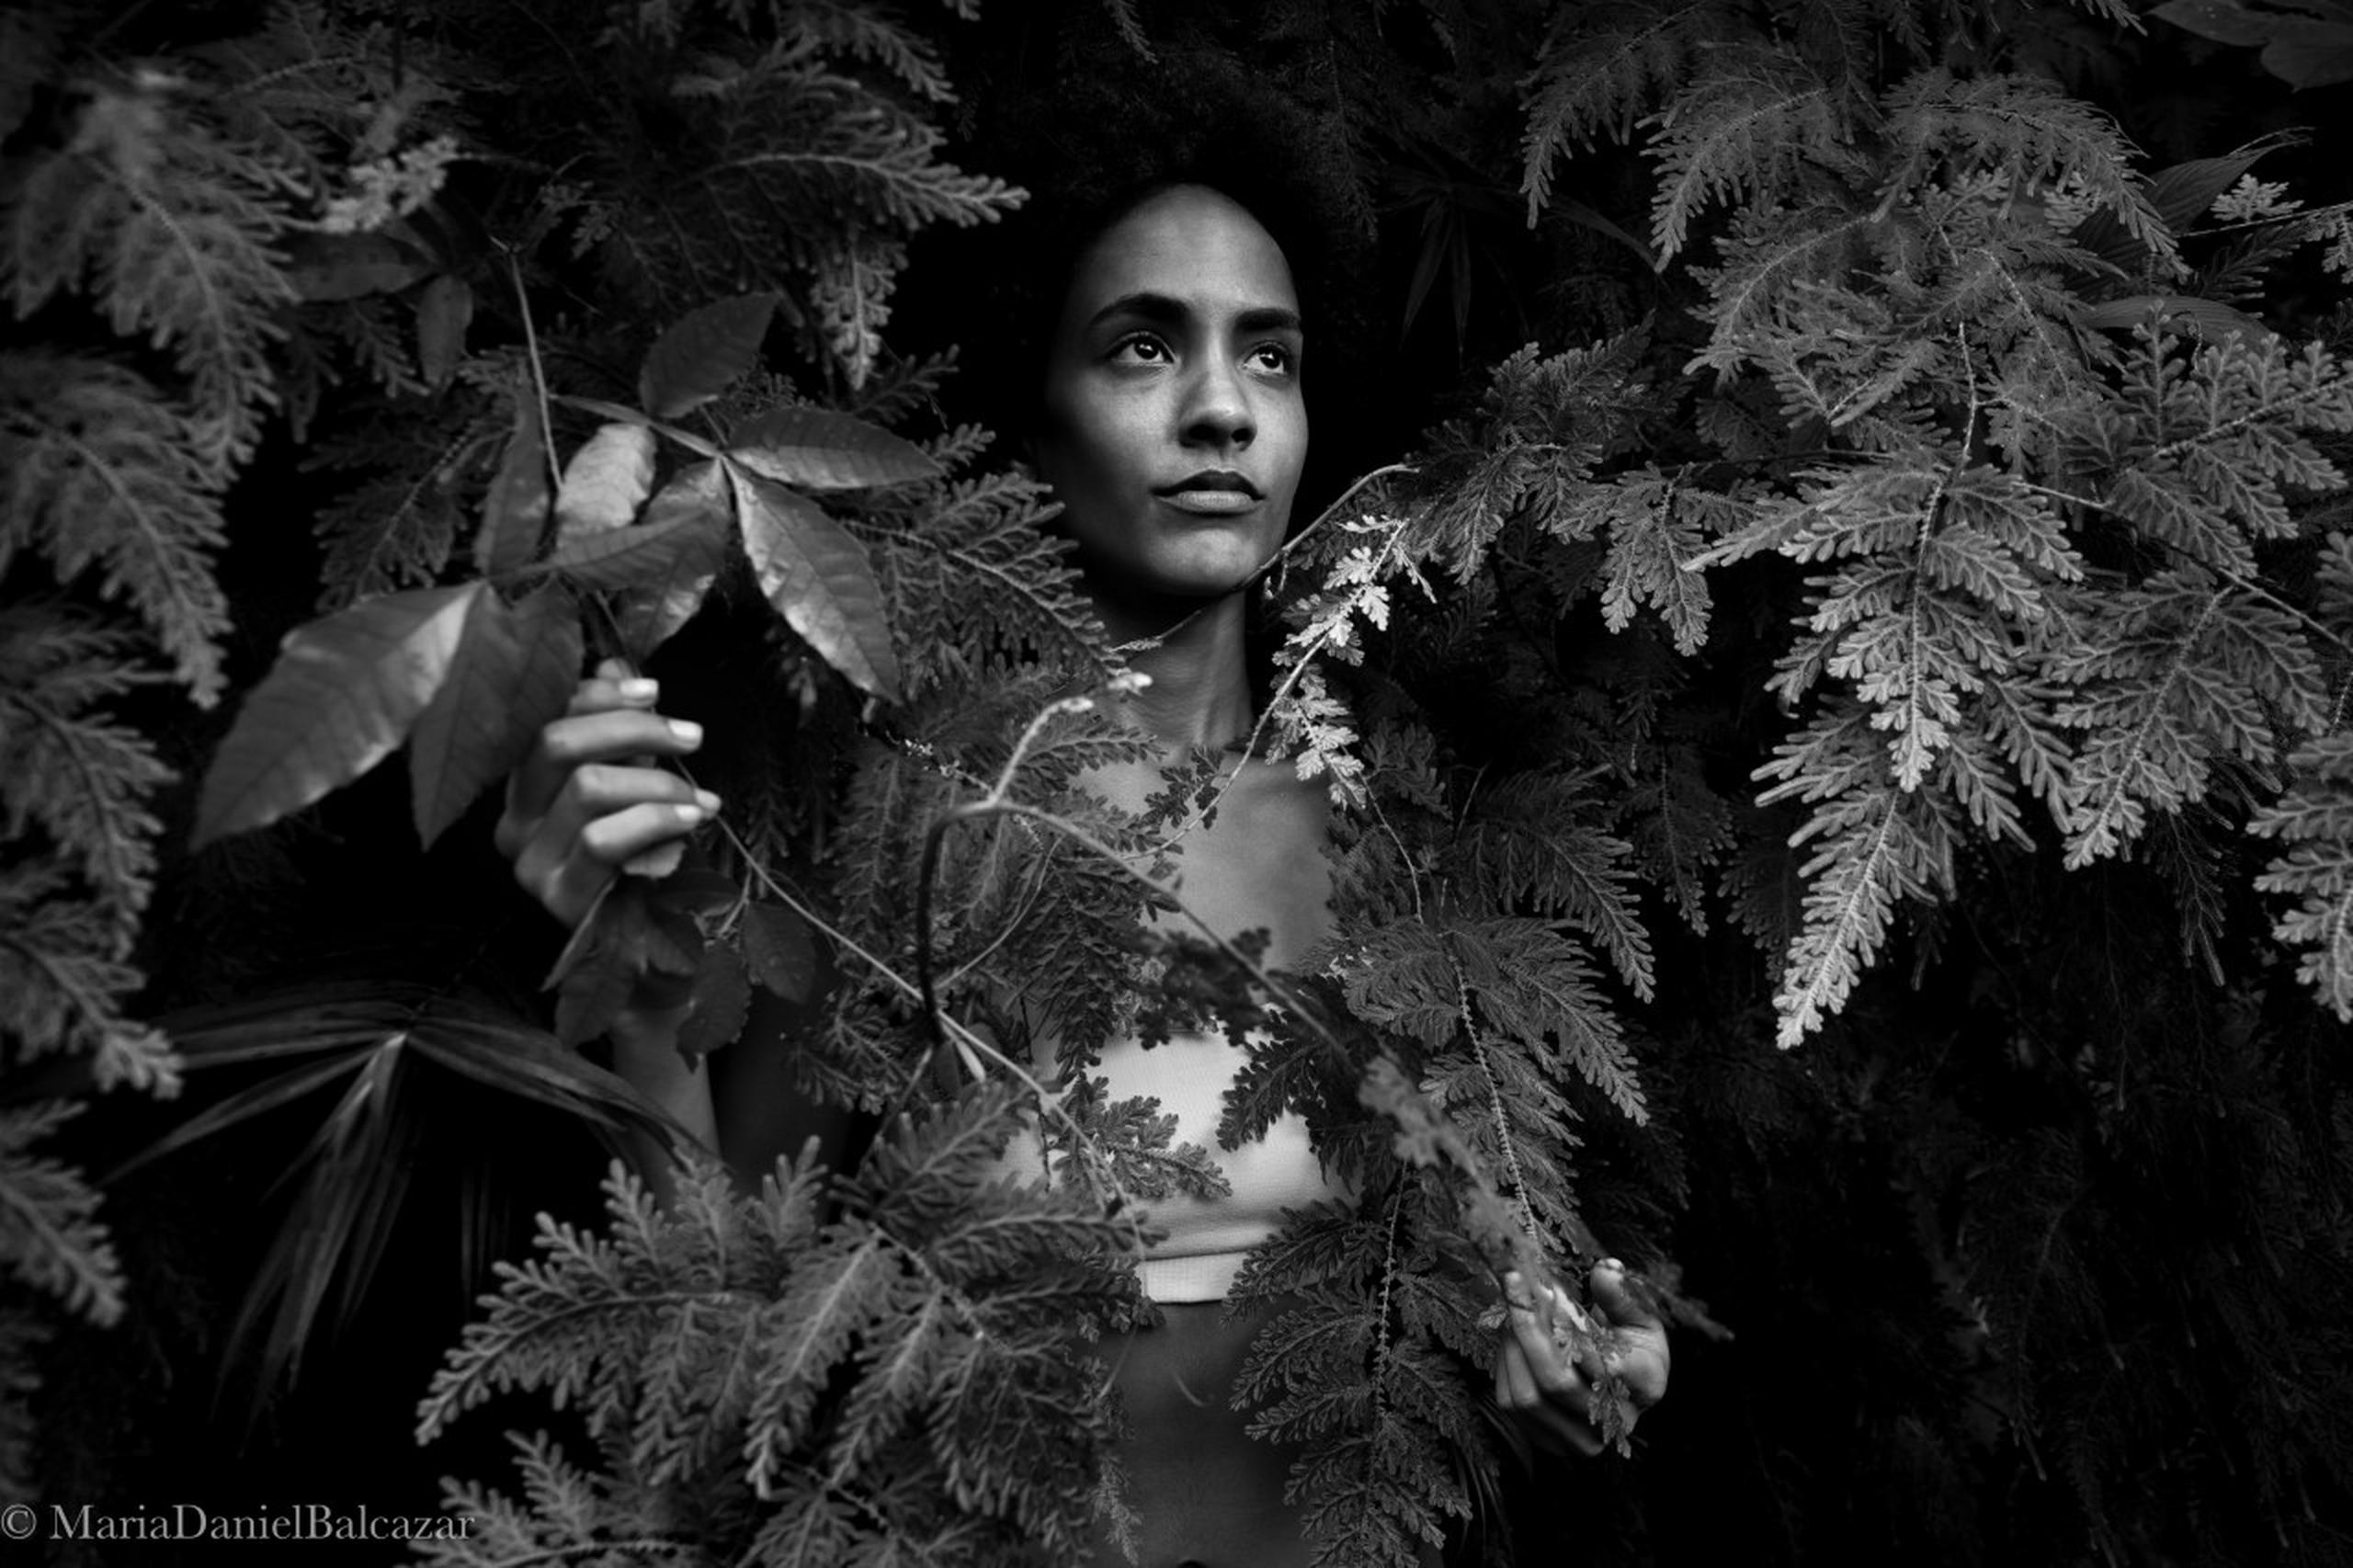 La exposición es una recopilación fotográfica de siete años de labor, retratando la obra de Julia de Burgos a través de otros mujeres latinoamericanas.